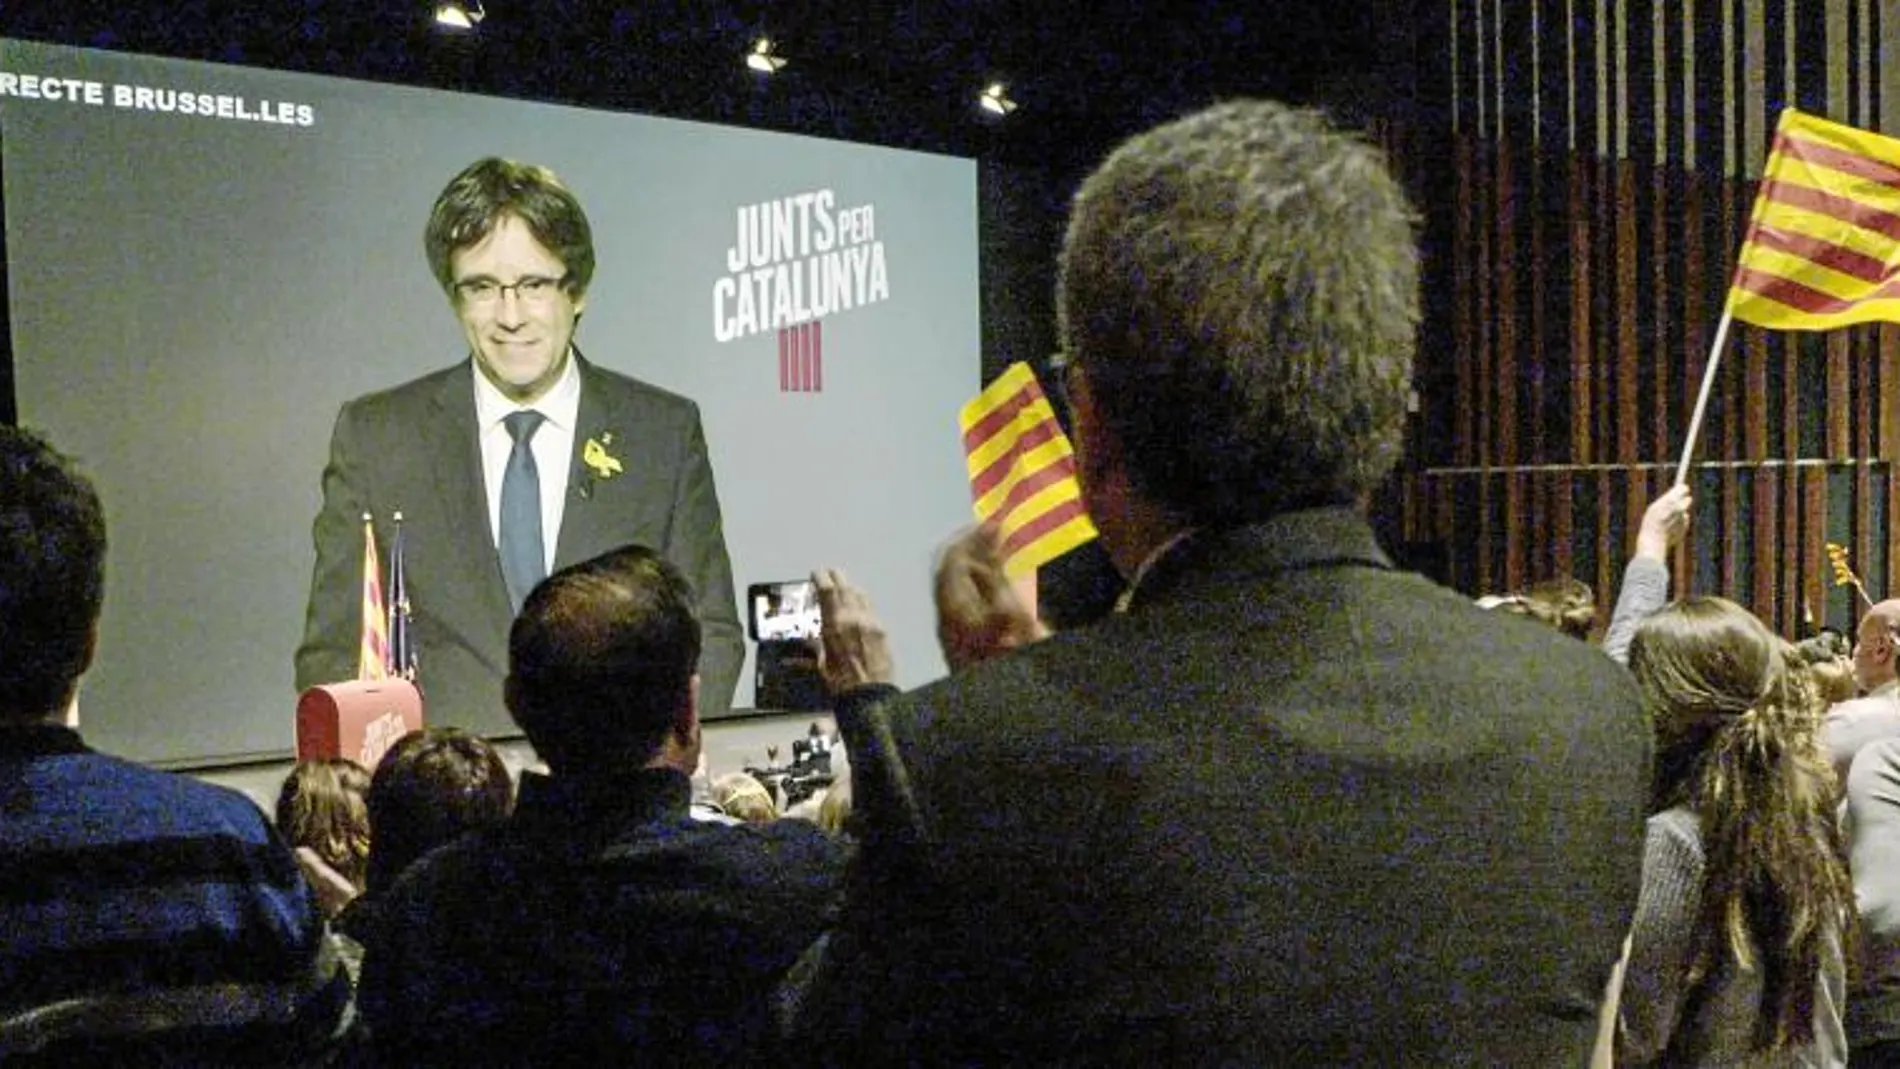 «Dos Cataluñas» muestra el día a día de una campaña protagonizada por Puigdemont como candidato desde Bruselas. Netflix